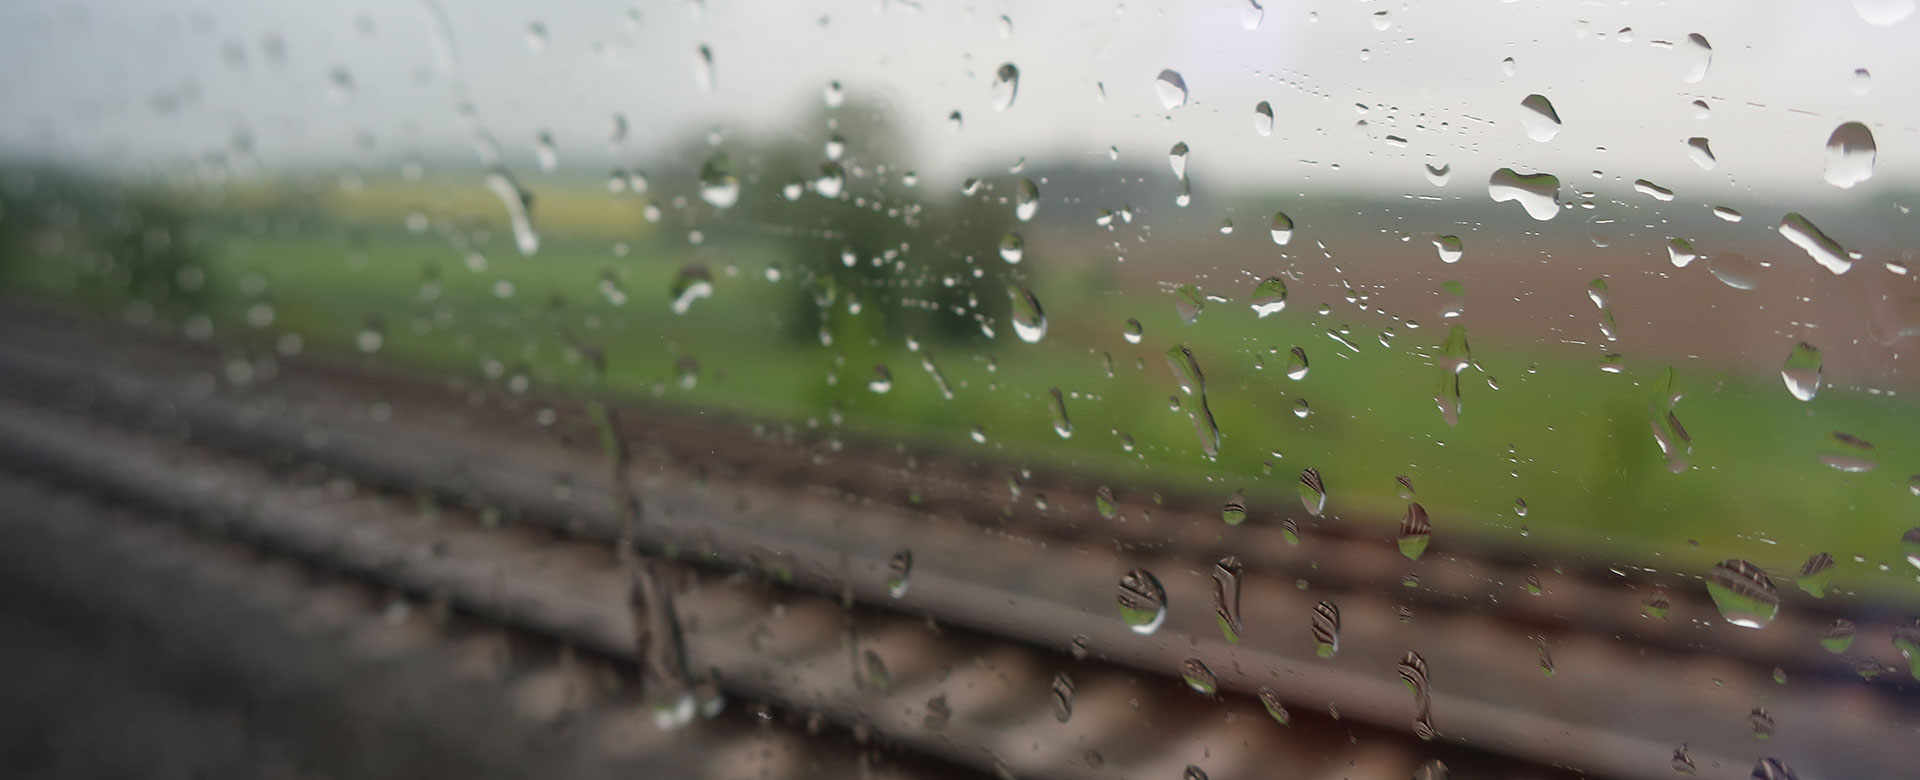 Binari visti da un finestrino bagnato per pioggia